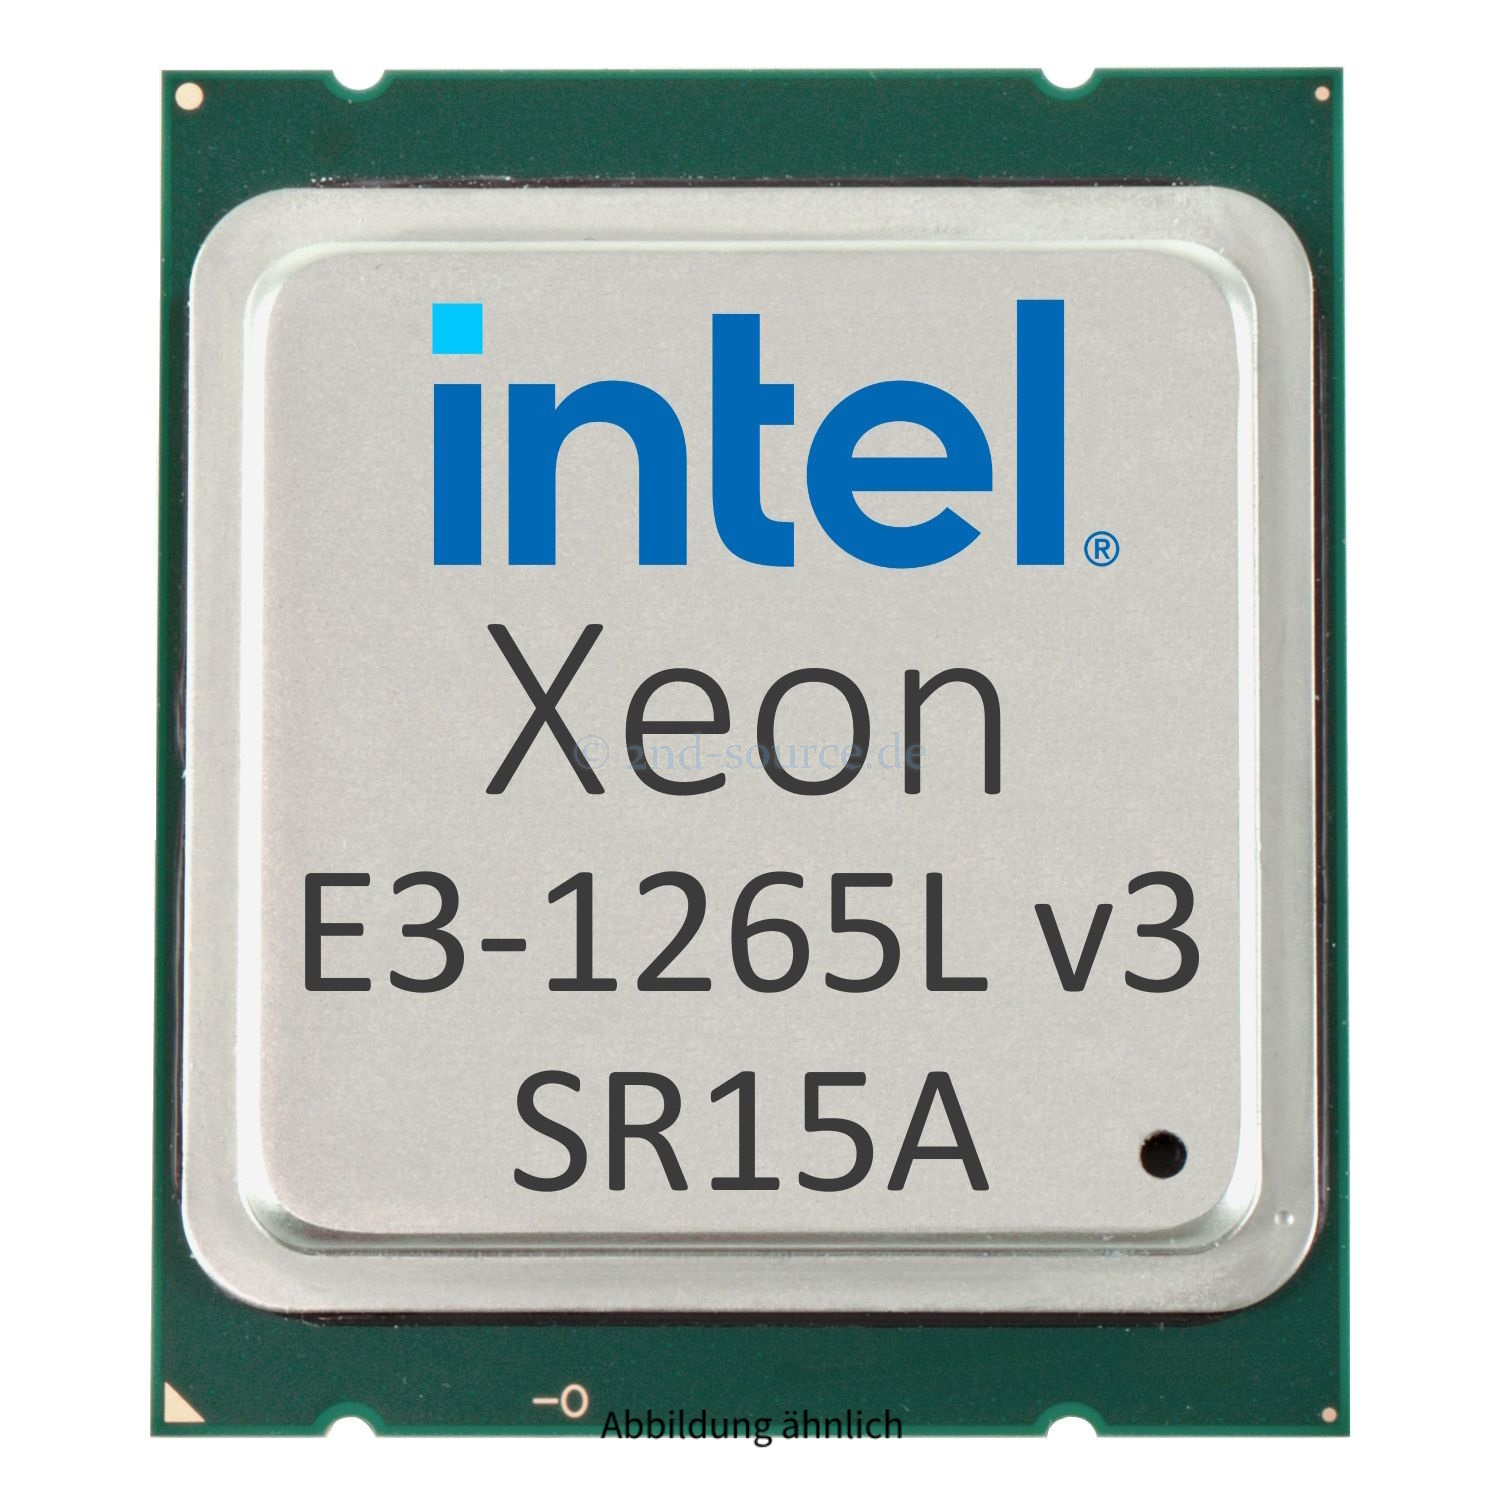 Intel Xeon E3-1265L v3 2.50GHz 8MB 4-Core CPU 45W SR15A CM8064601467406